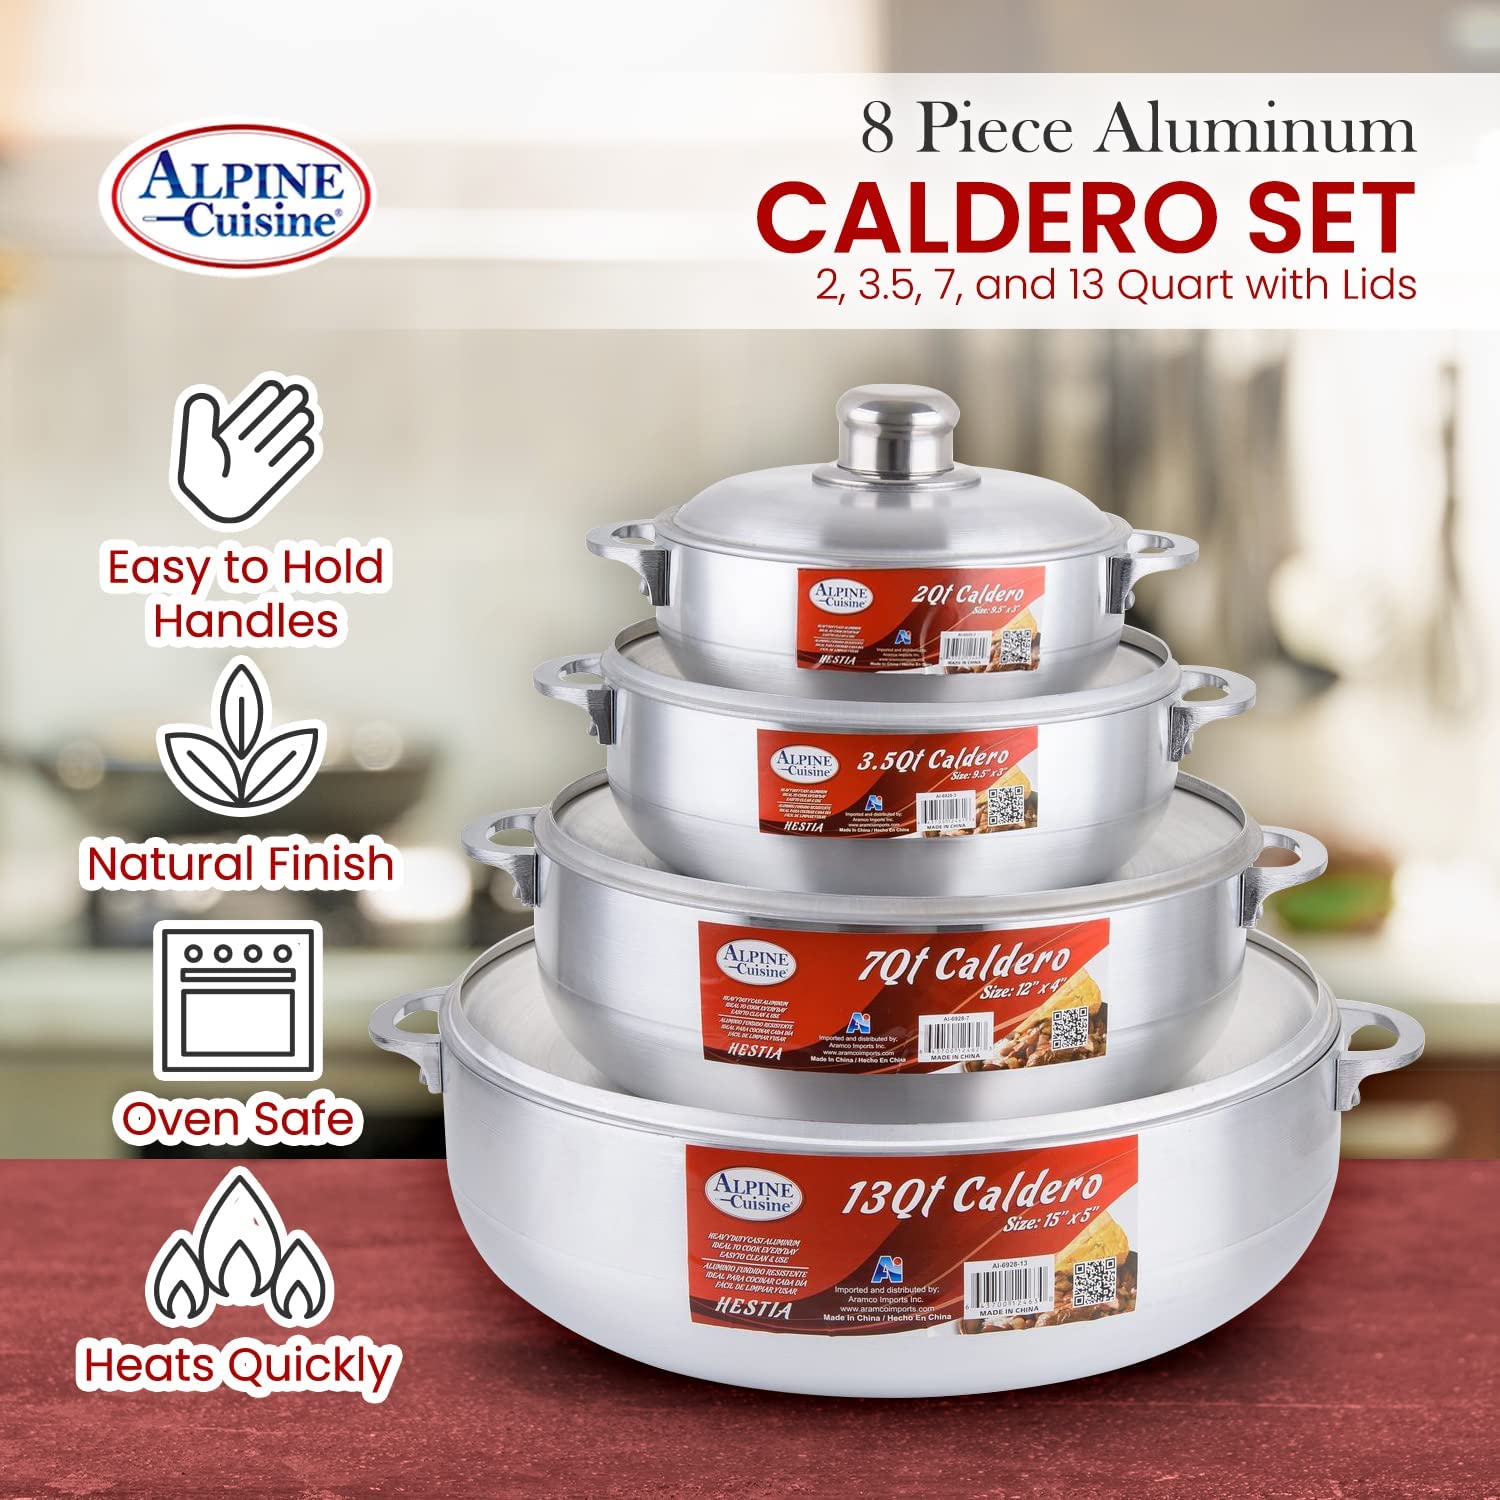 Aramco 8 Piece Alpine Gourmet Aluminum Caldero Set, 2/3.5/7/13 quart, Silver